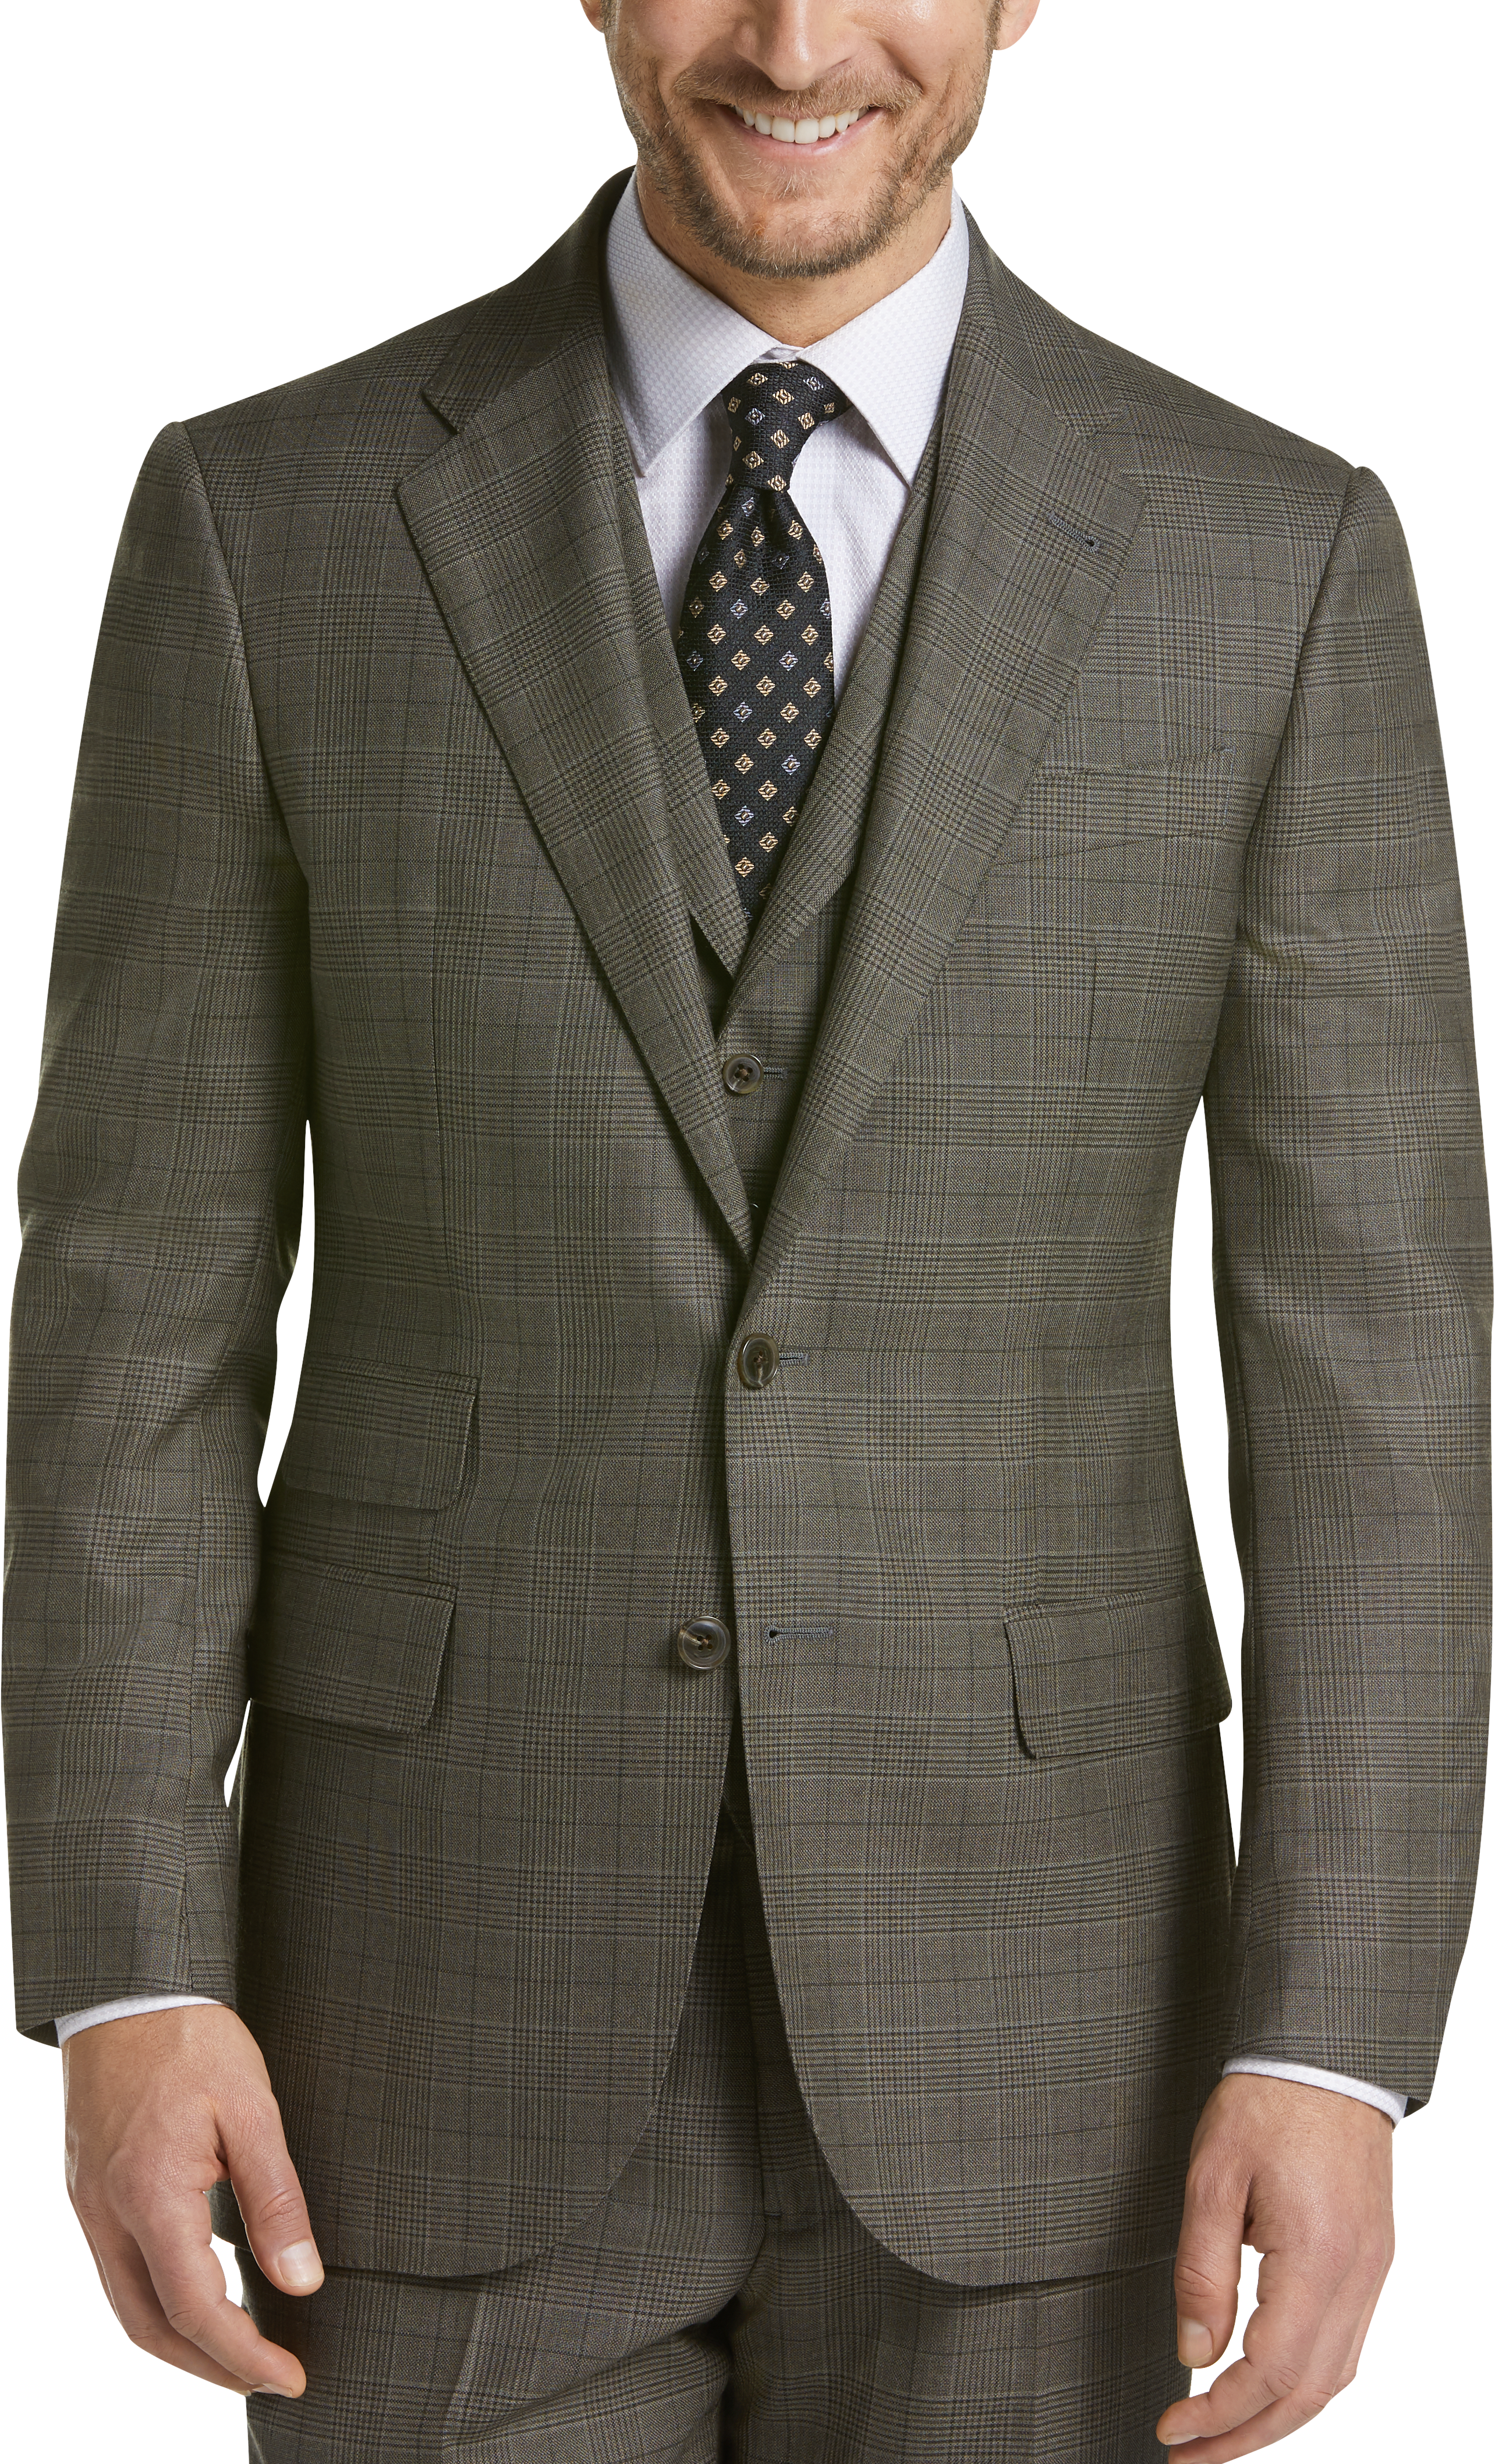 Joseph Abboud Limited Edition Olive Plaid Slim Fit Suit - Men's Sale ...